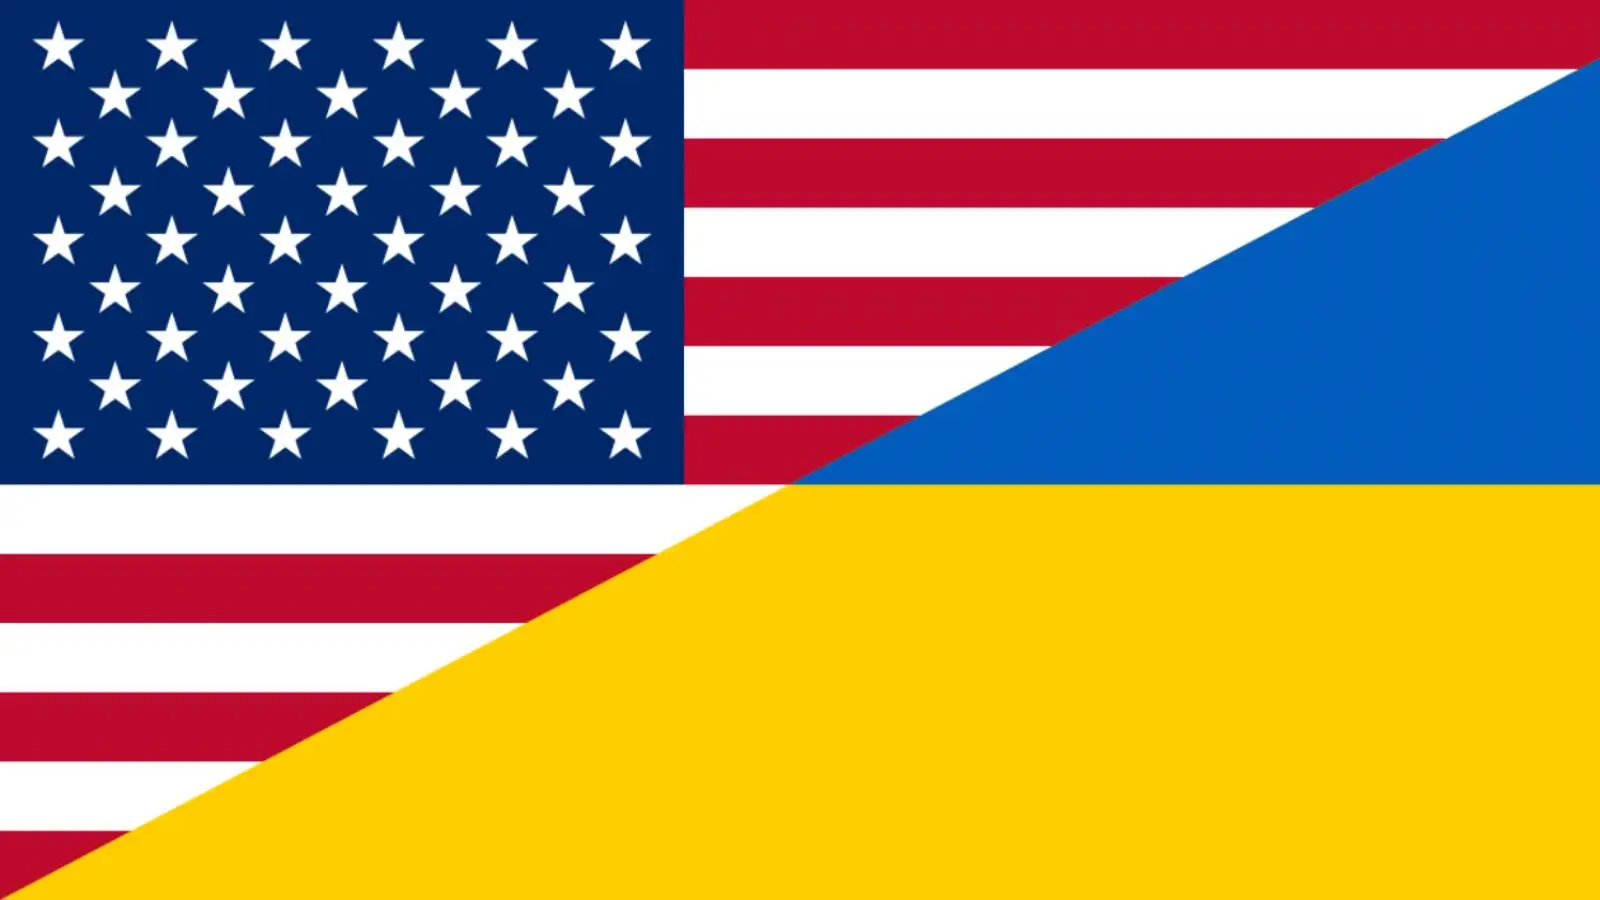 USA hotar Ryssland med katastrofala konsekvenser om det attackerar Ukraina med kärnvapenmissiler